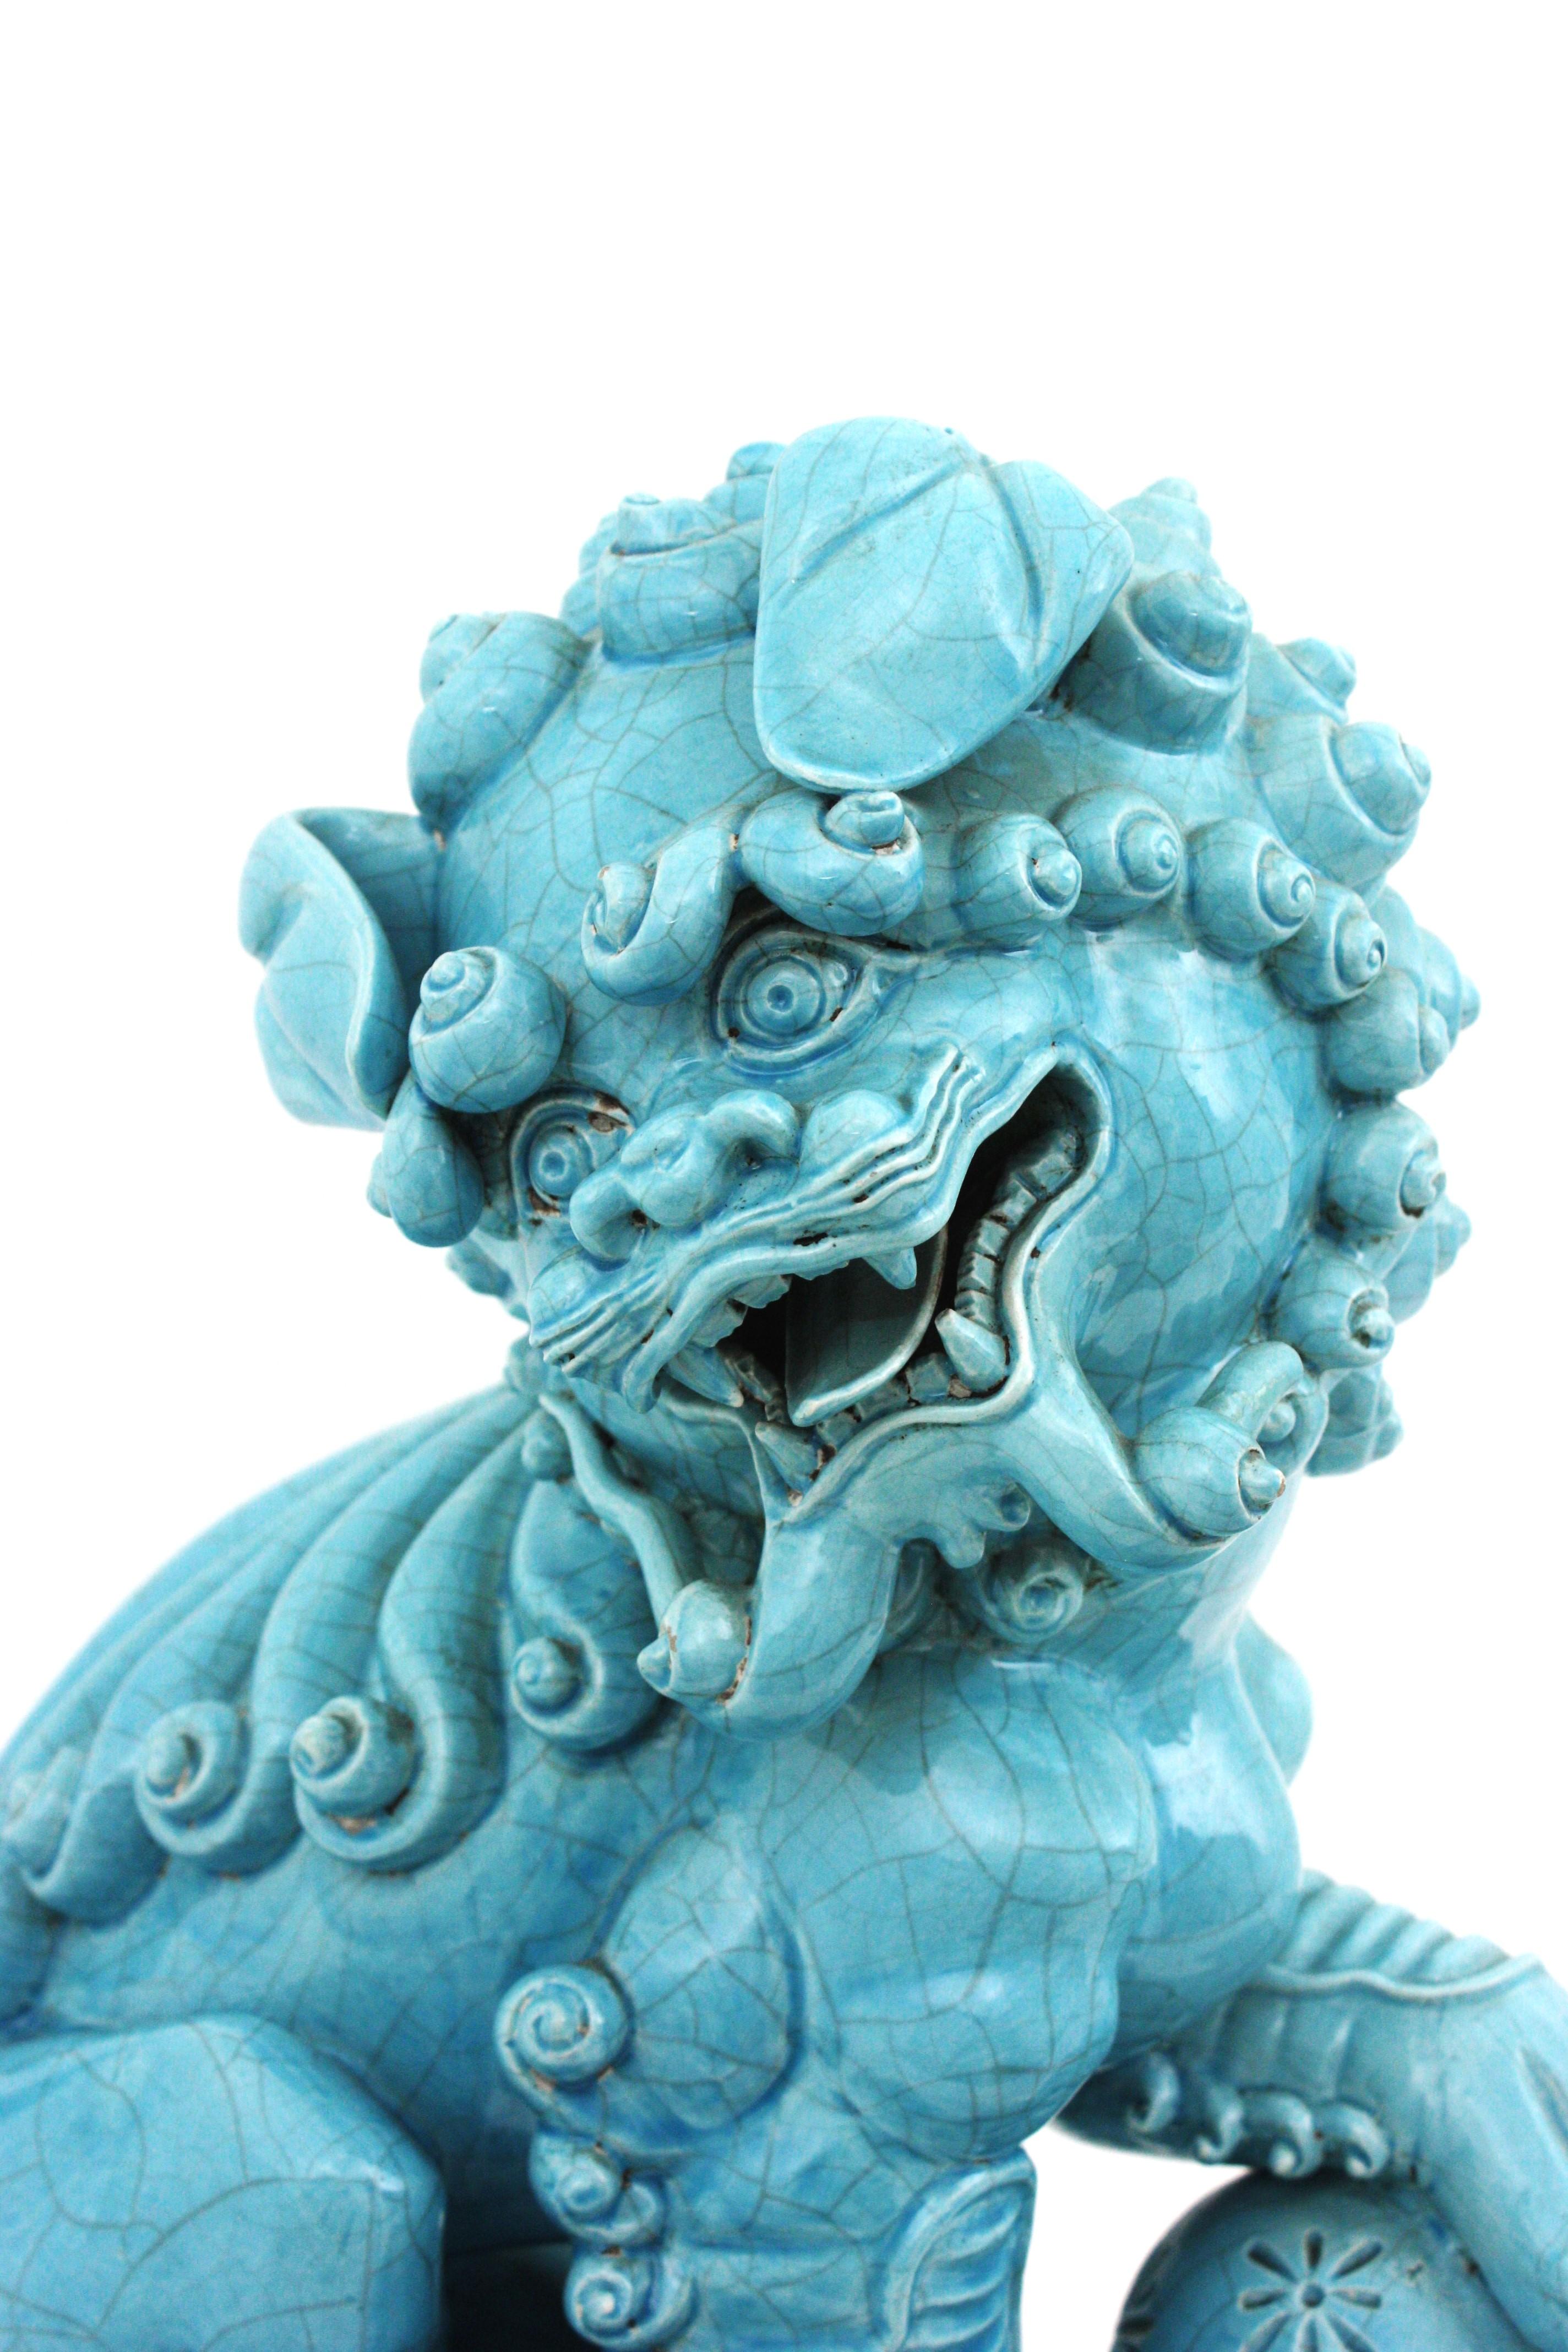 Glazed Large Foo Dog Guardian Lion Blue Porcelain Sculpture For Sale